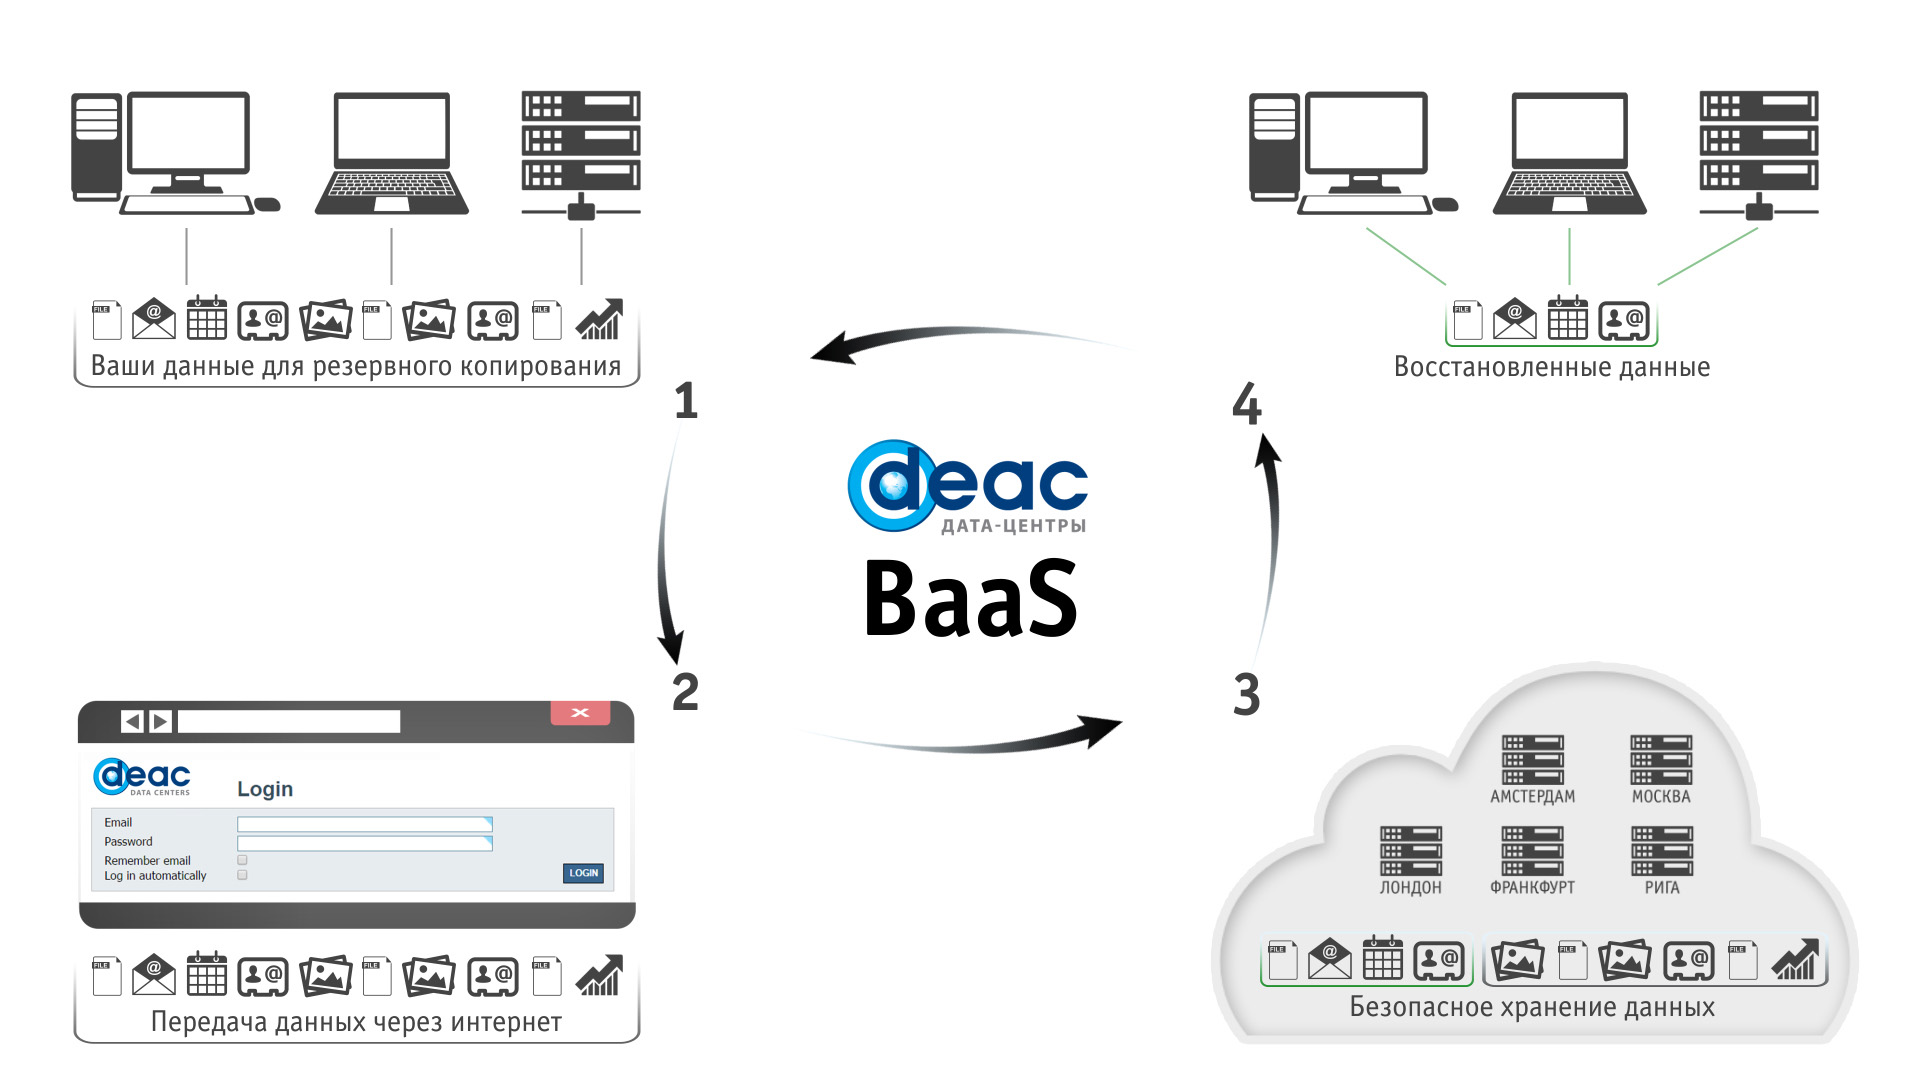 Резервное копирование данных BaaS DEAC